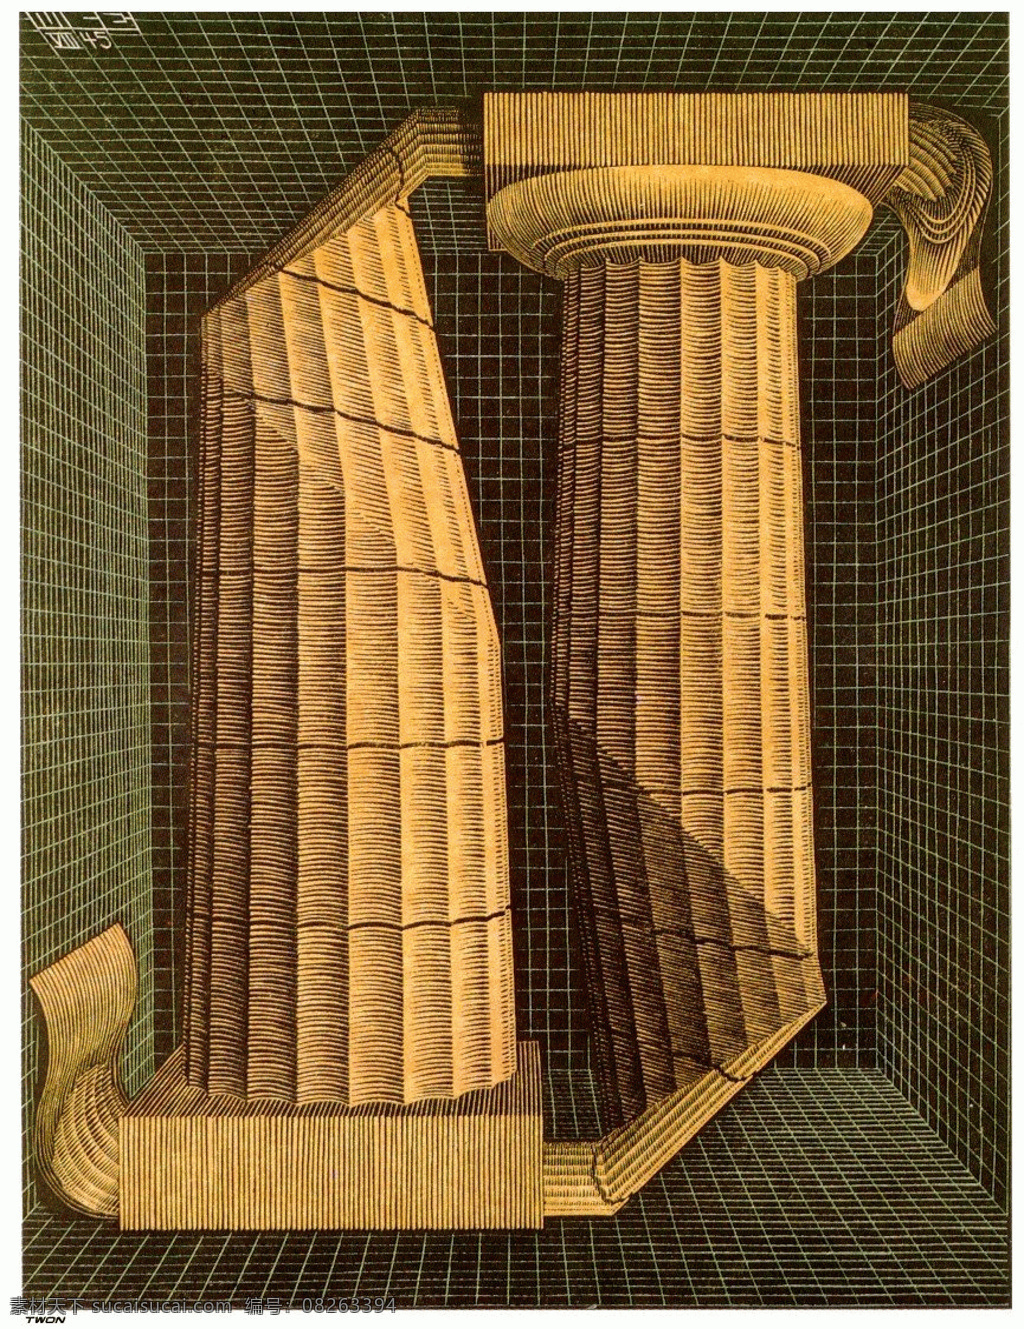 埃舍尔 视错觉 平面构成 绘画书法 文化艺术